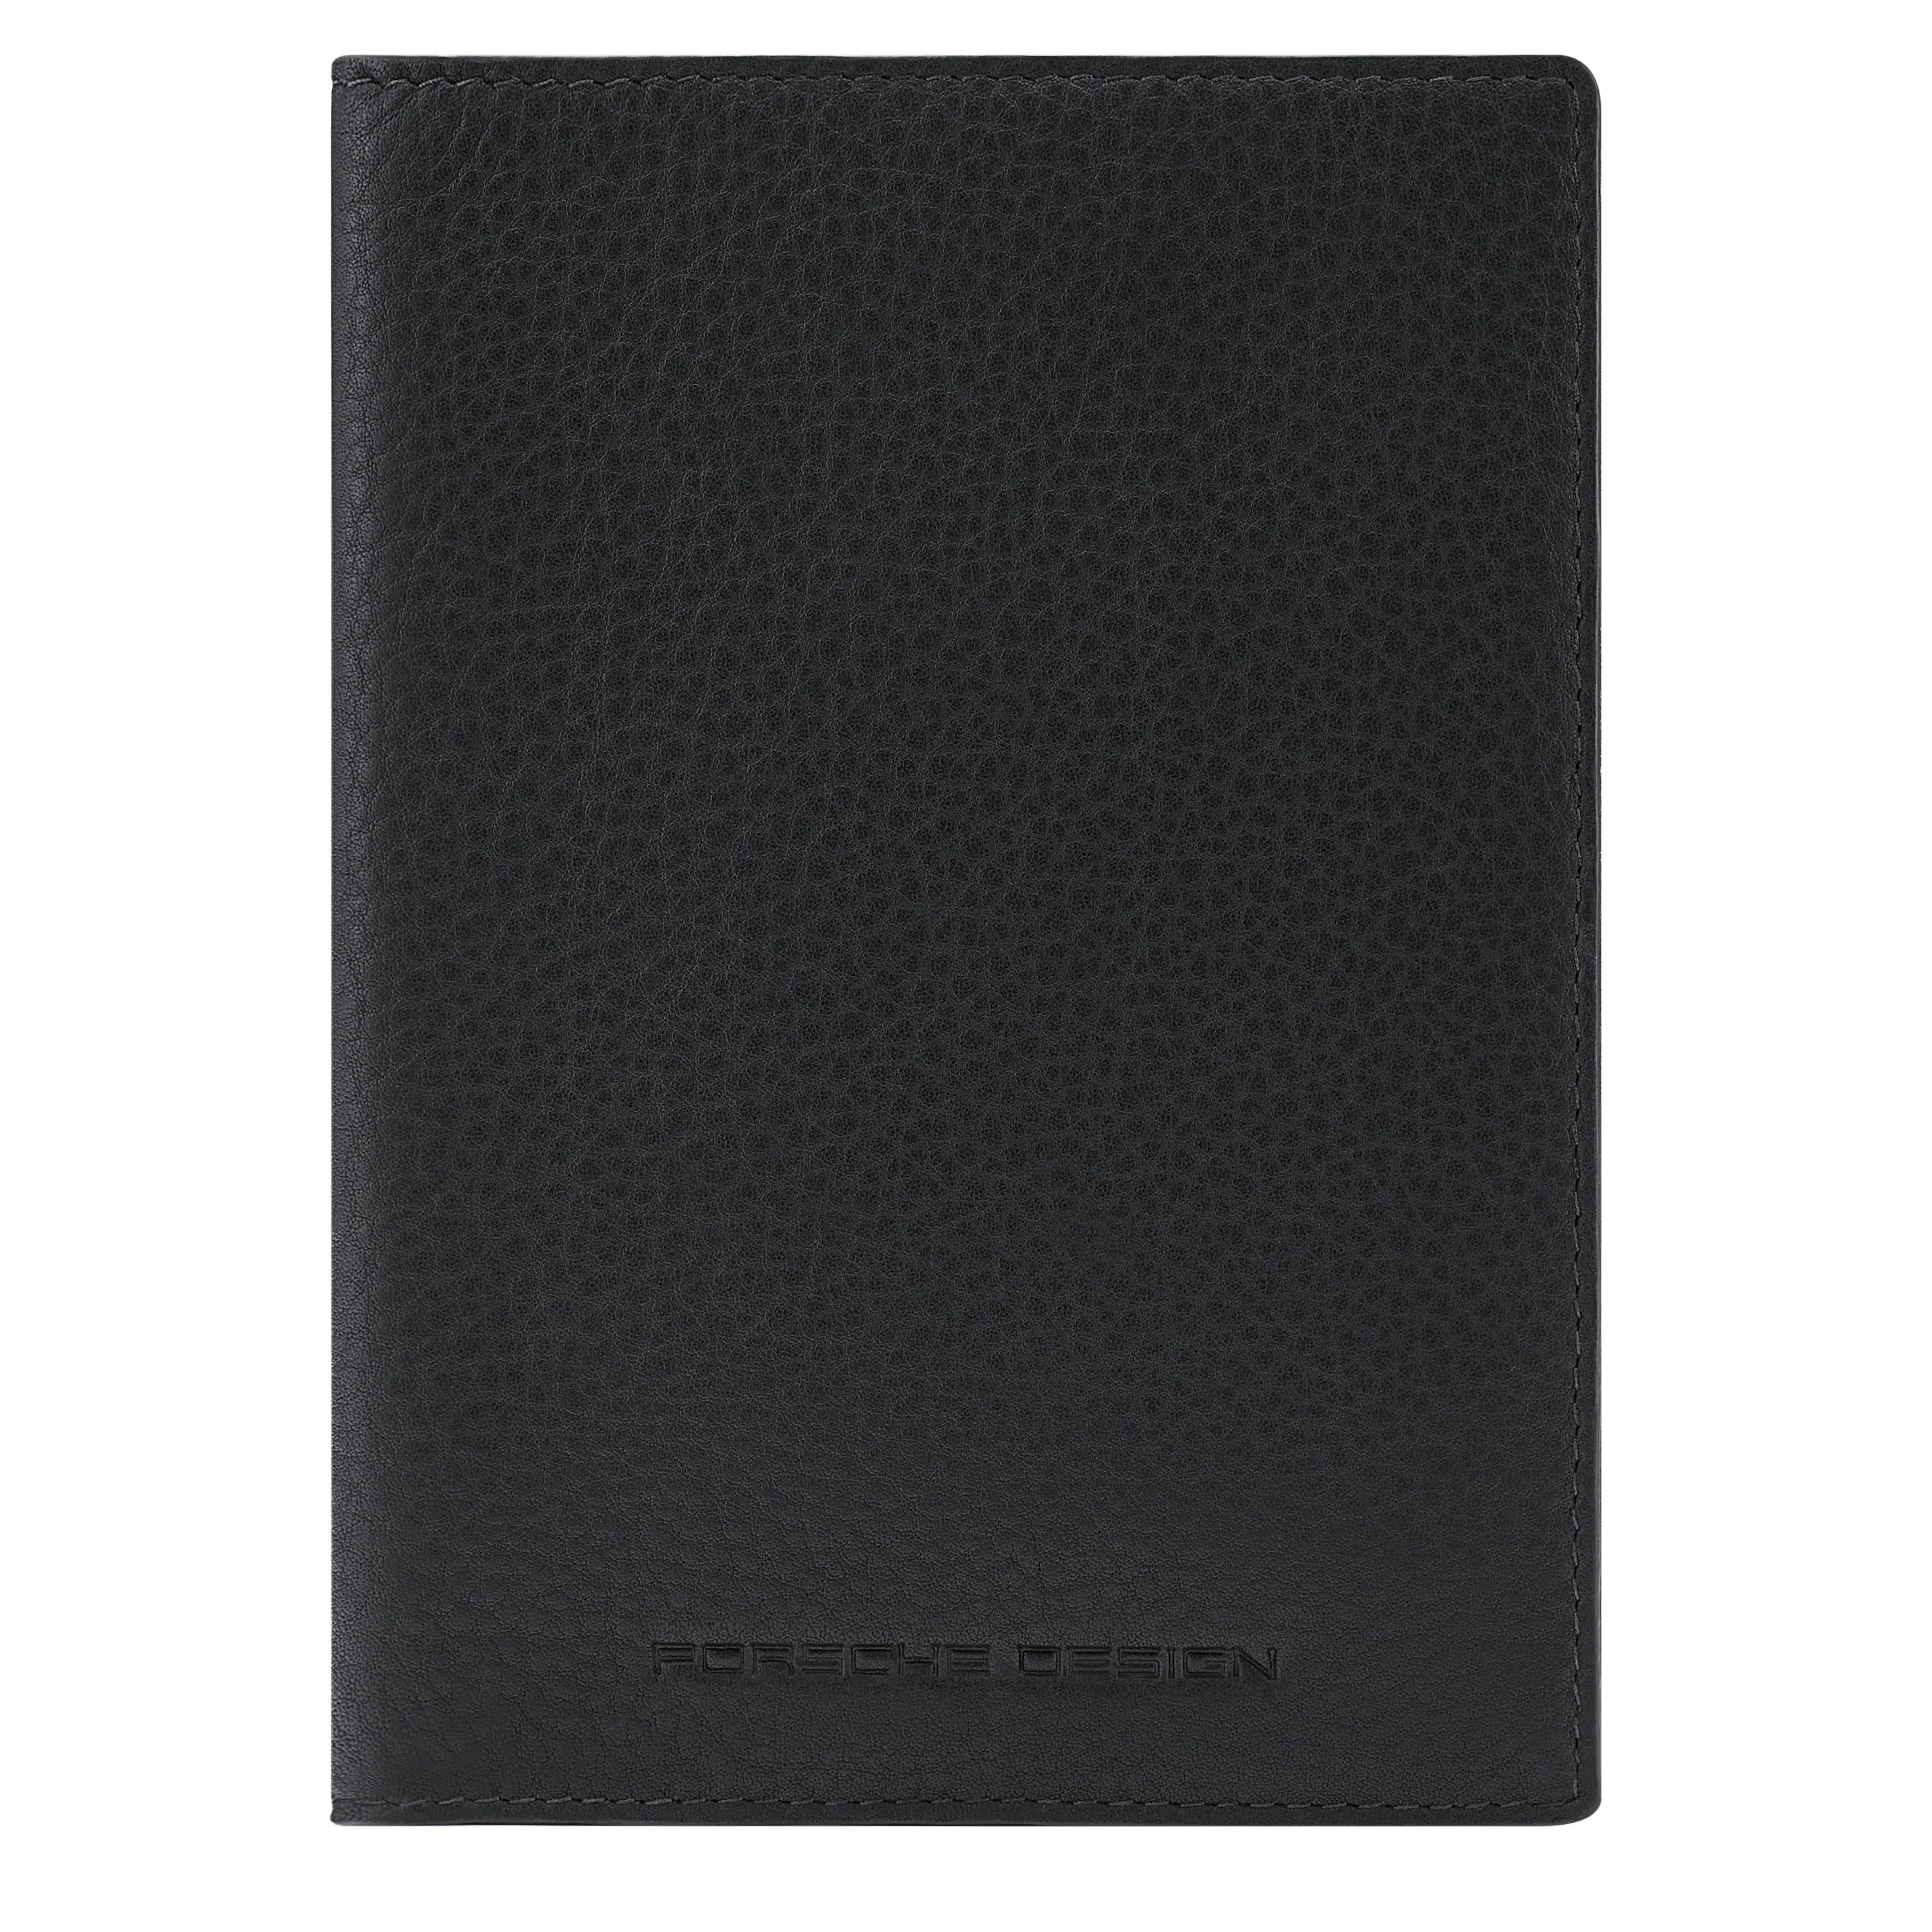 Porsche Design Accessories Business Passport Holder RFID 14 cm - Black